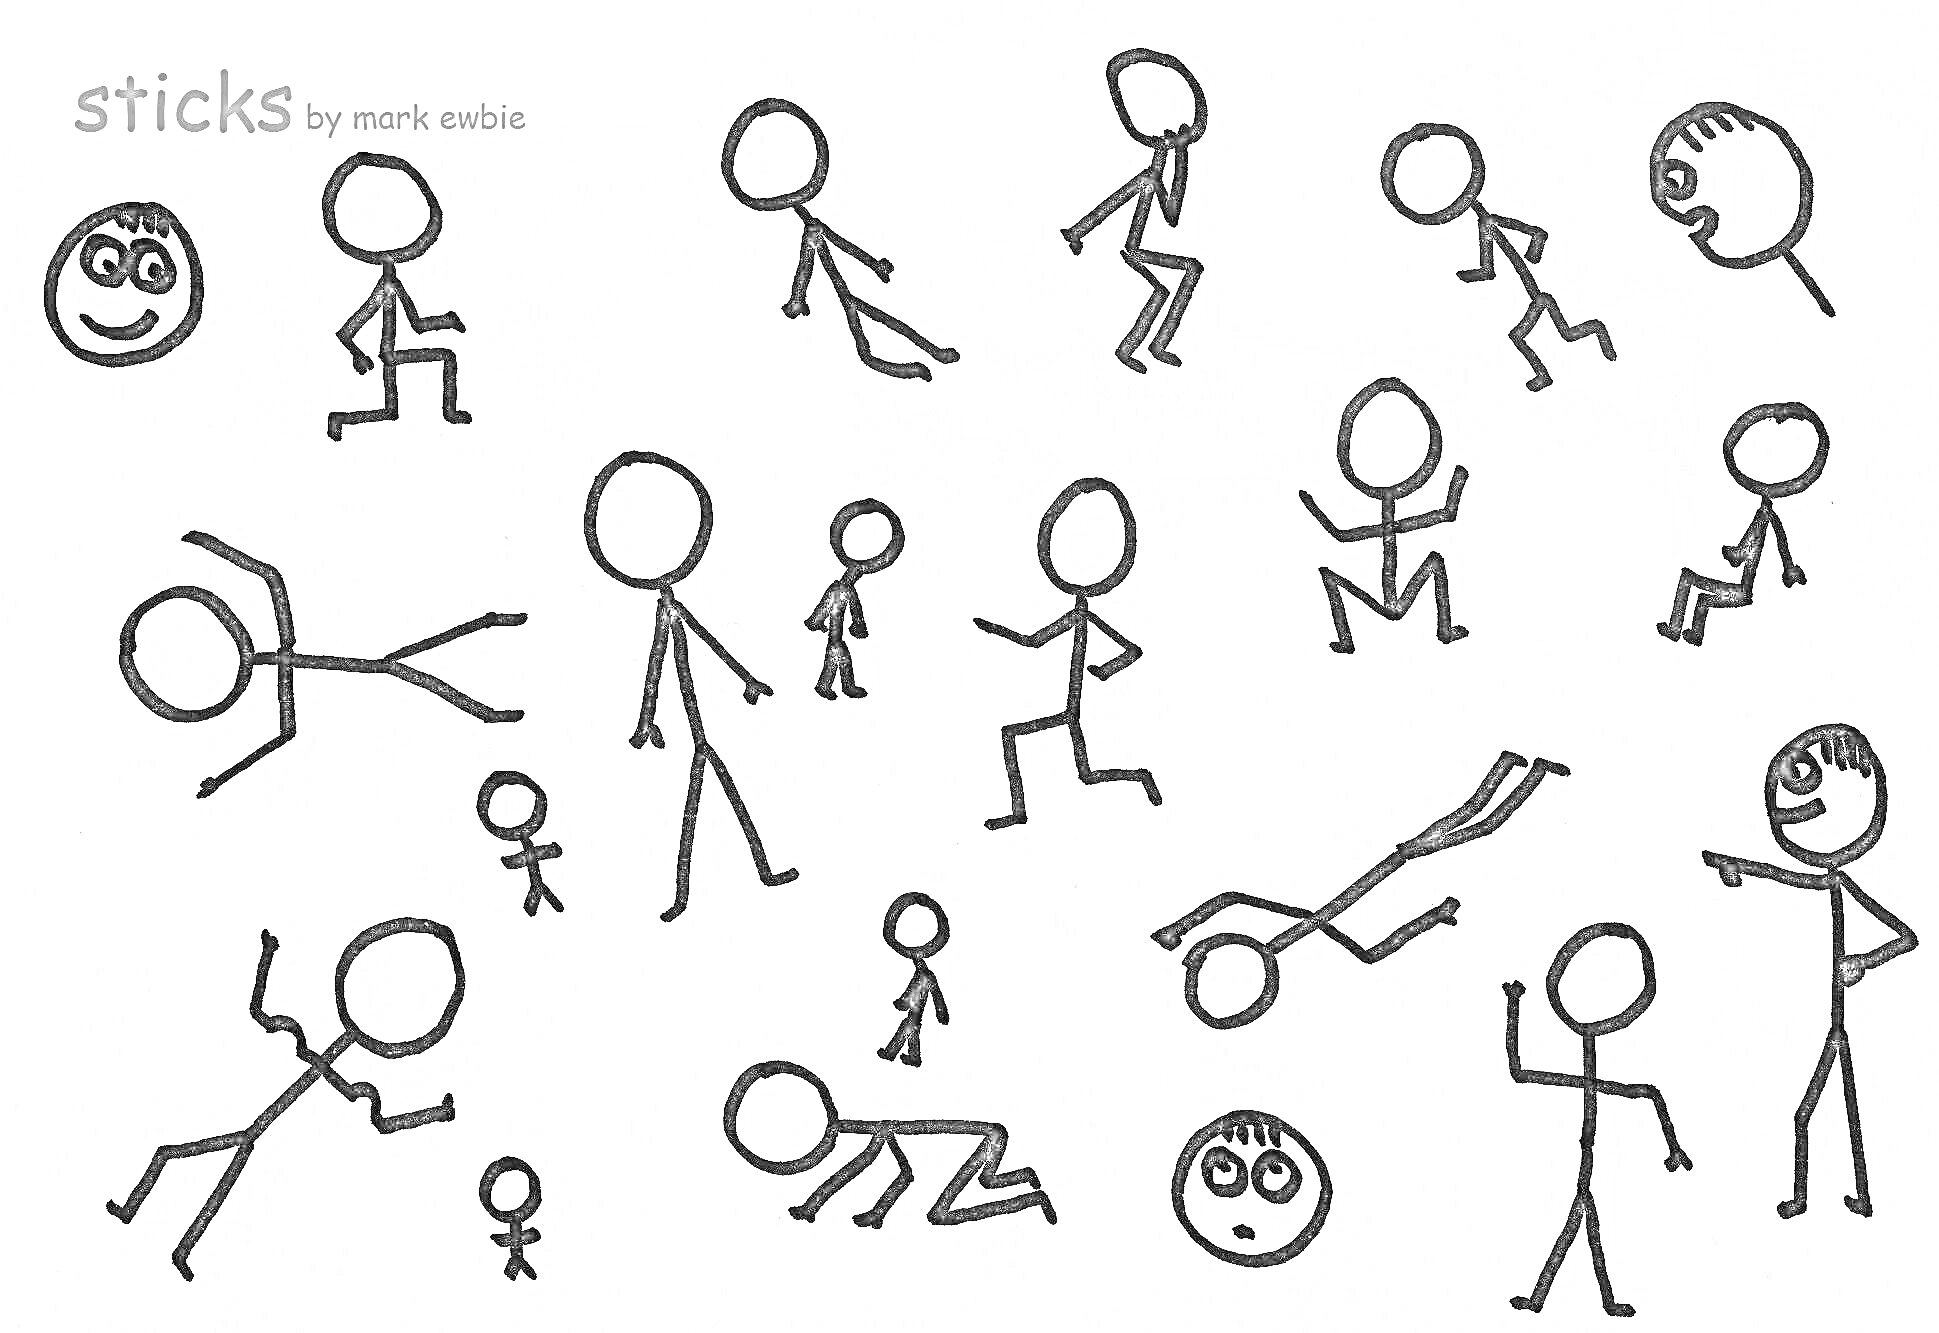 Раскраска Стикмены в различных позах, включая бег, прыжки, ходьбу, лежание на животе, сидение, указывающего человека и детские фигуры